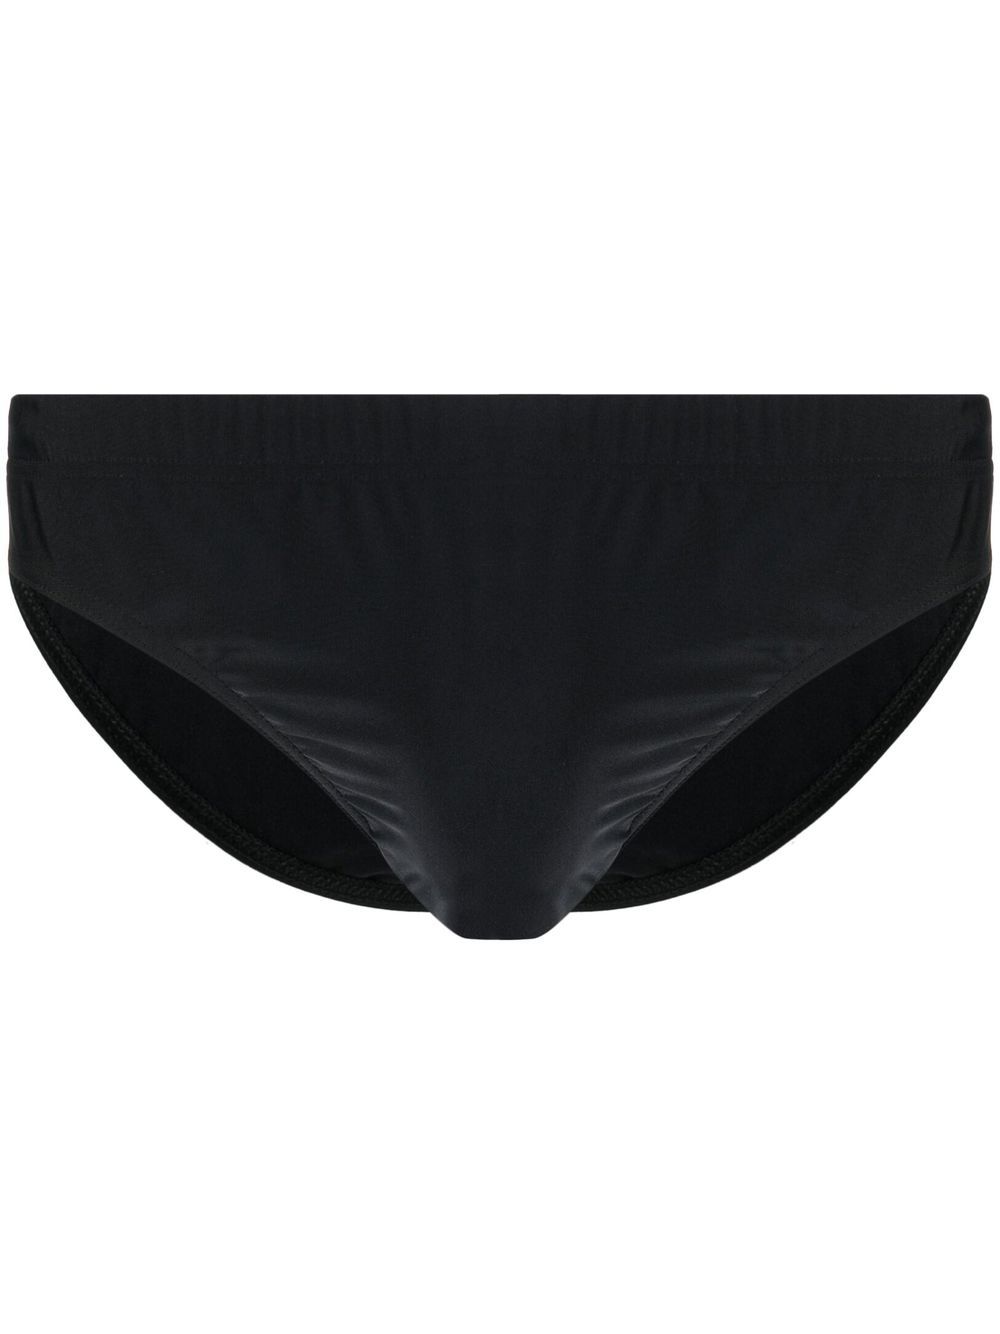 모스키노 남성 logo swim trunks - Black J42037076